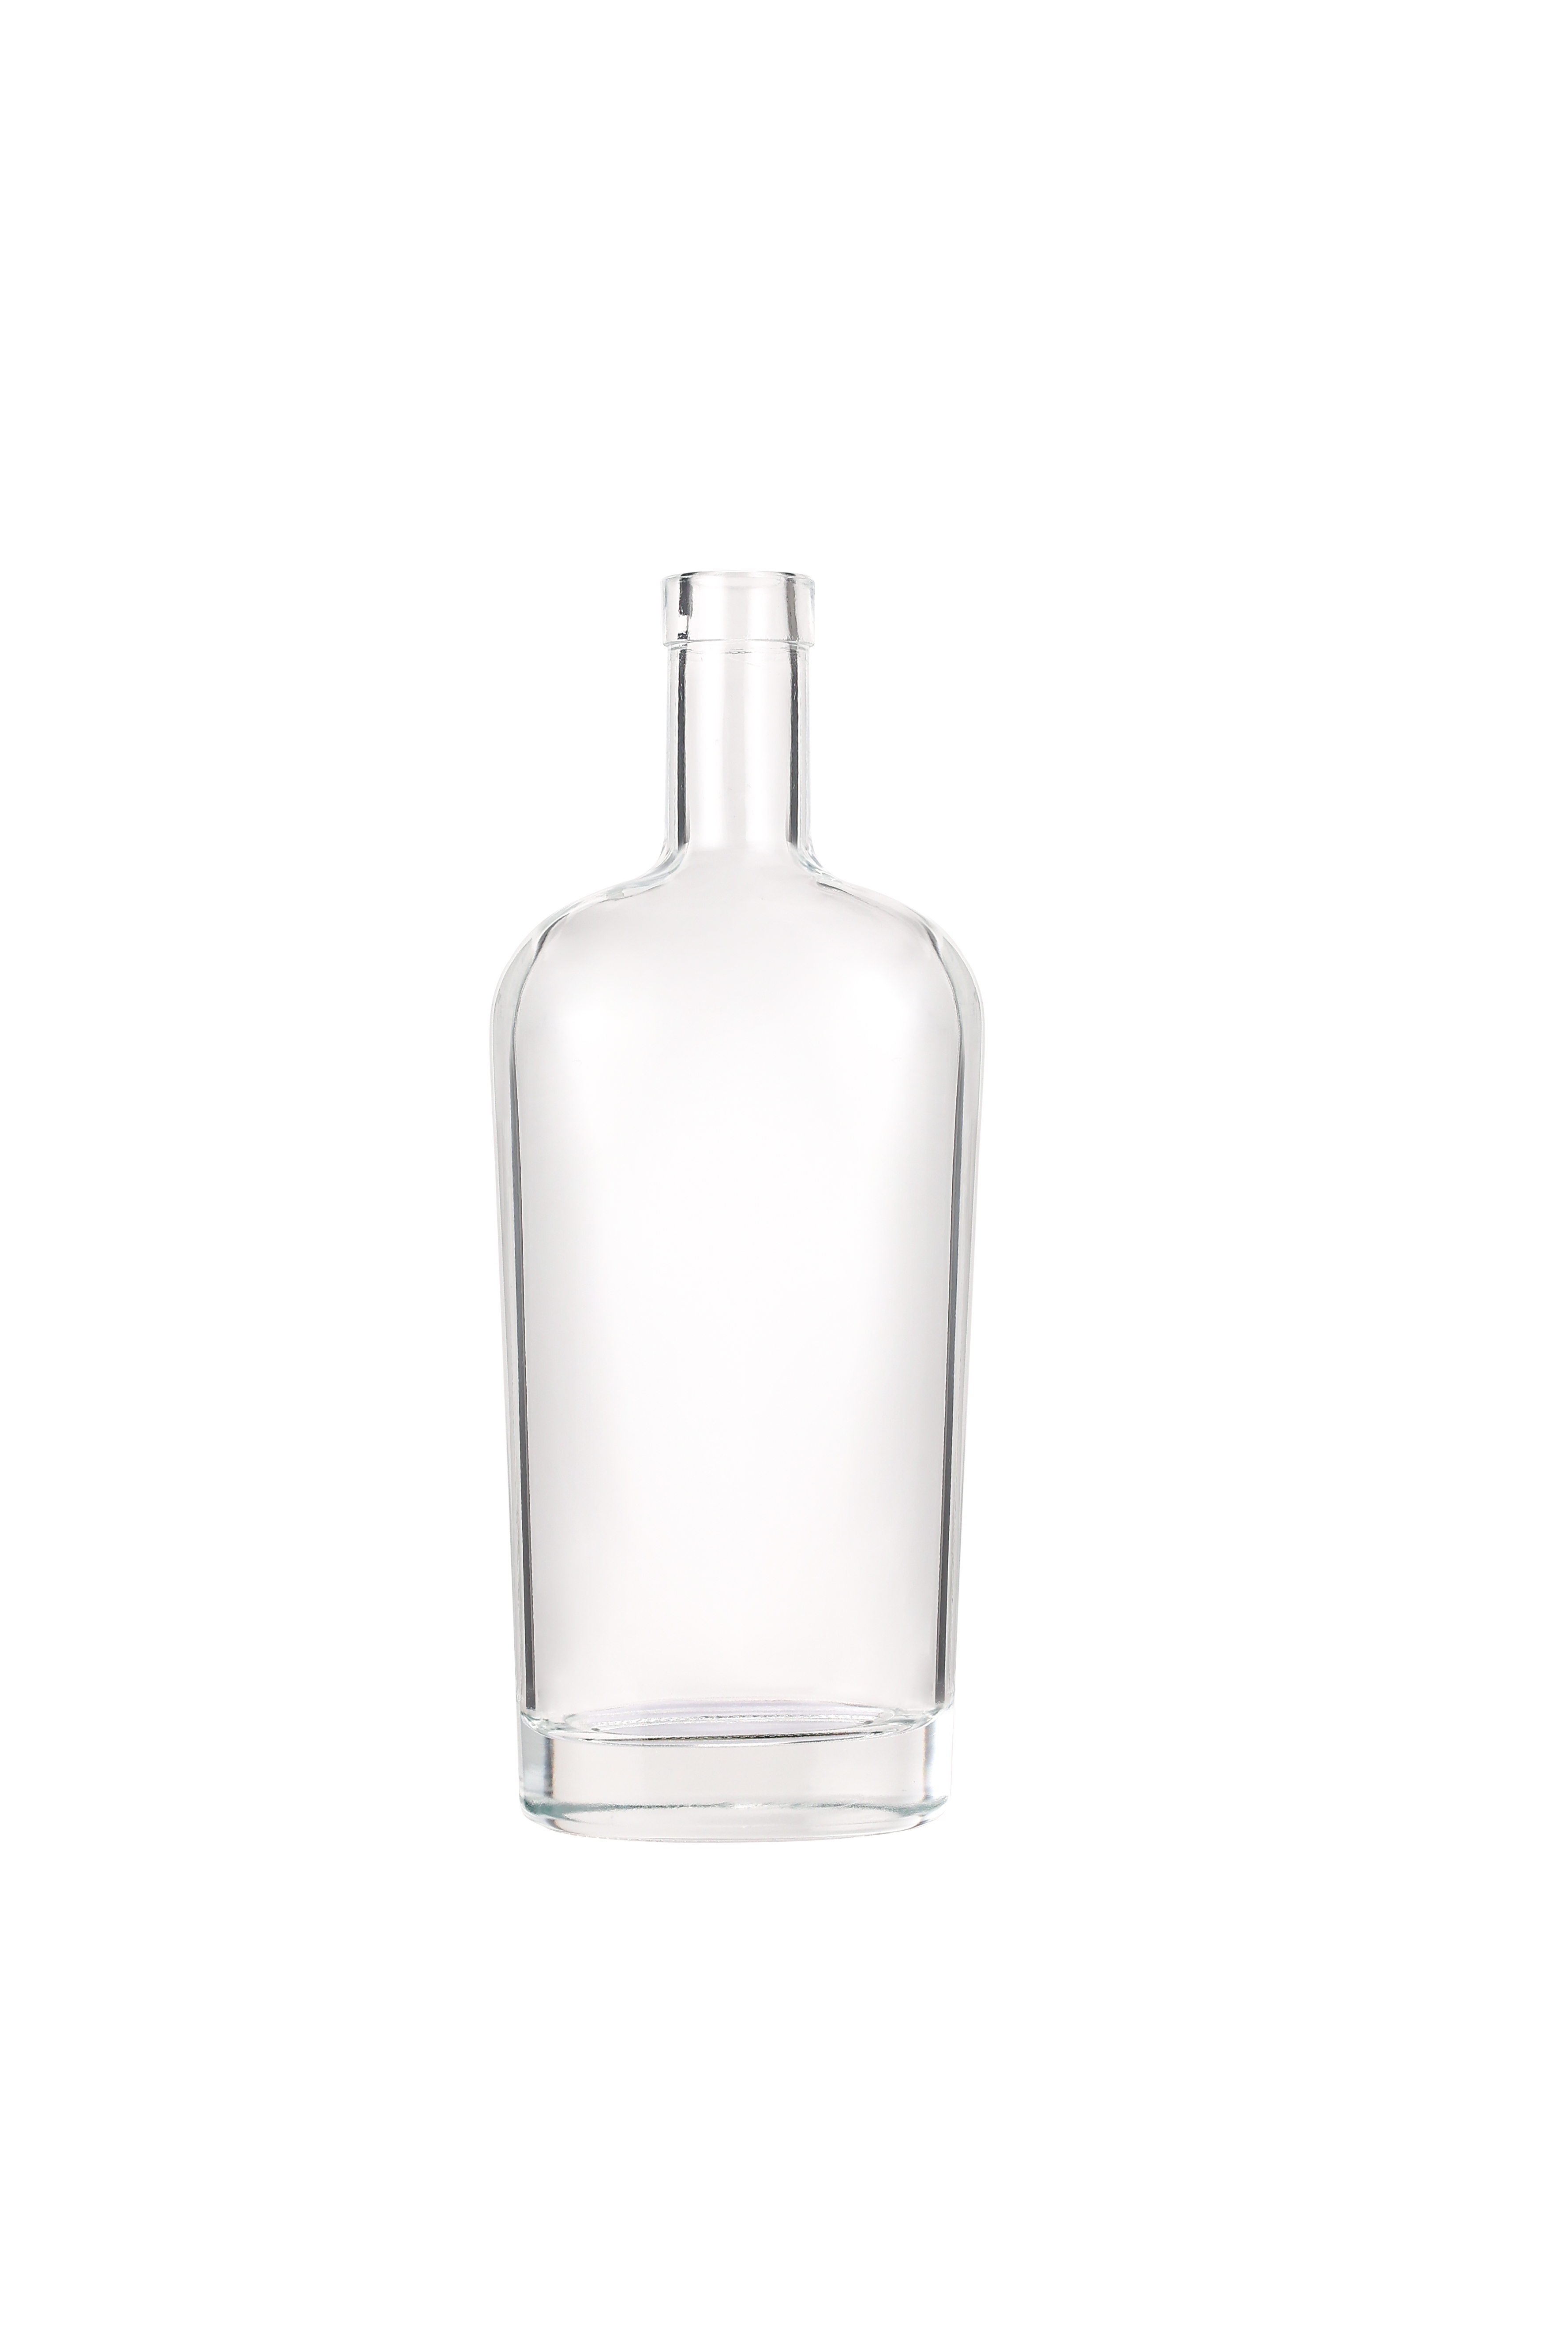 Empty Glass Liquor Bottle Rum Whisky Vodka Spirit Glass Liquor Bottle with Cork for Liquor Whiskey 